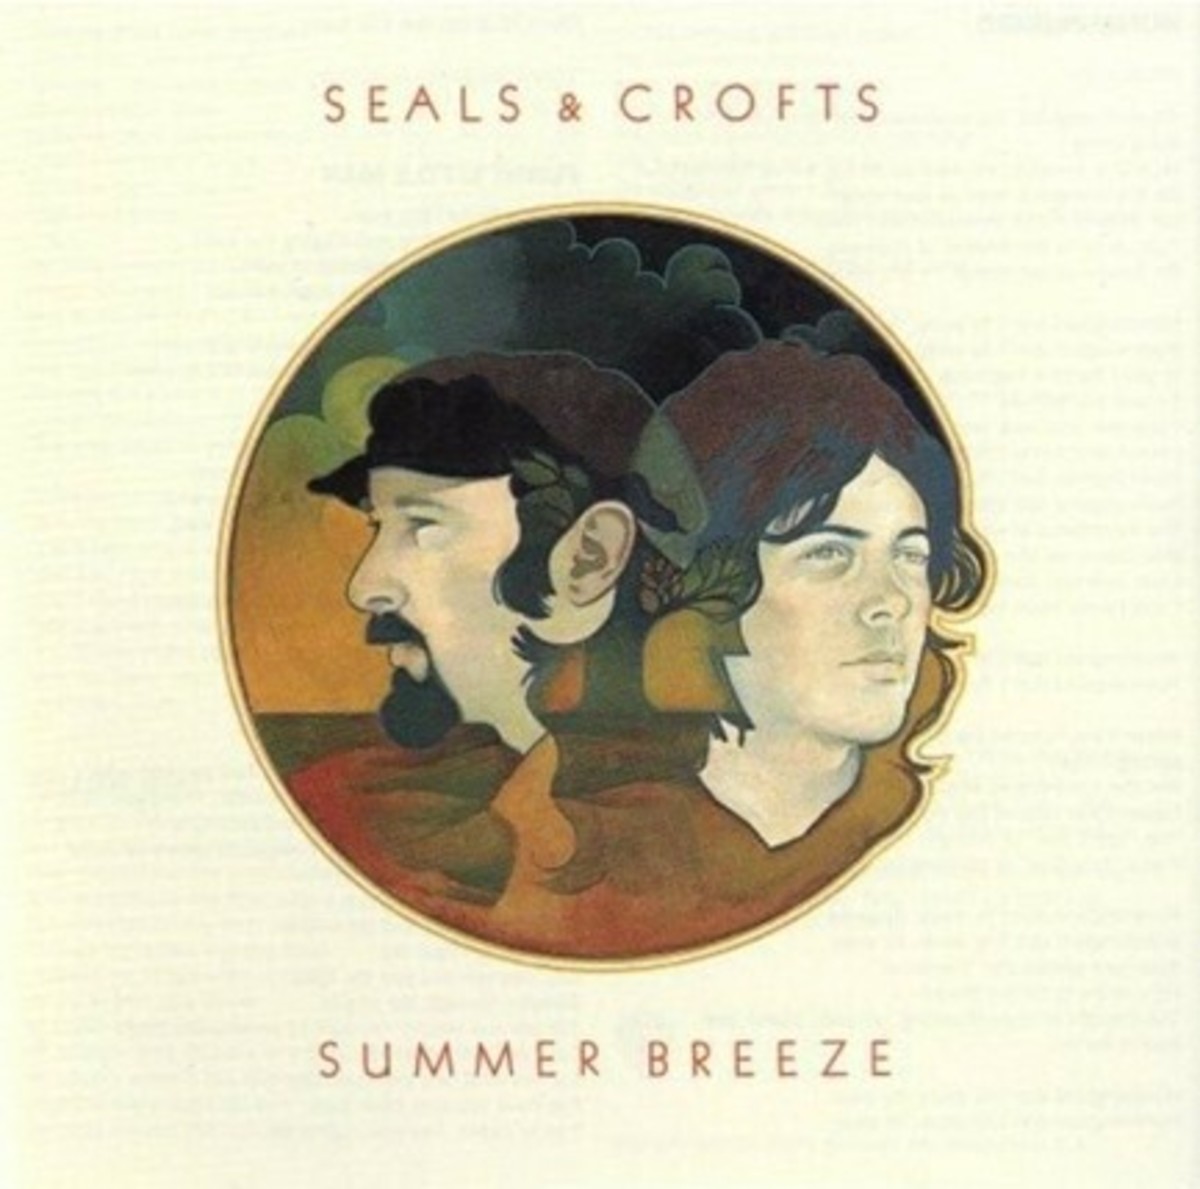 Seals & Crofts' Summer Breeze (L-R): Jim Seals and Dash Crofts